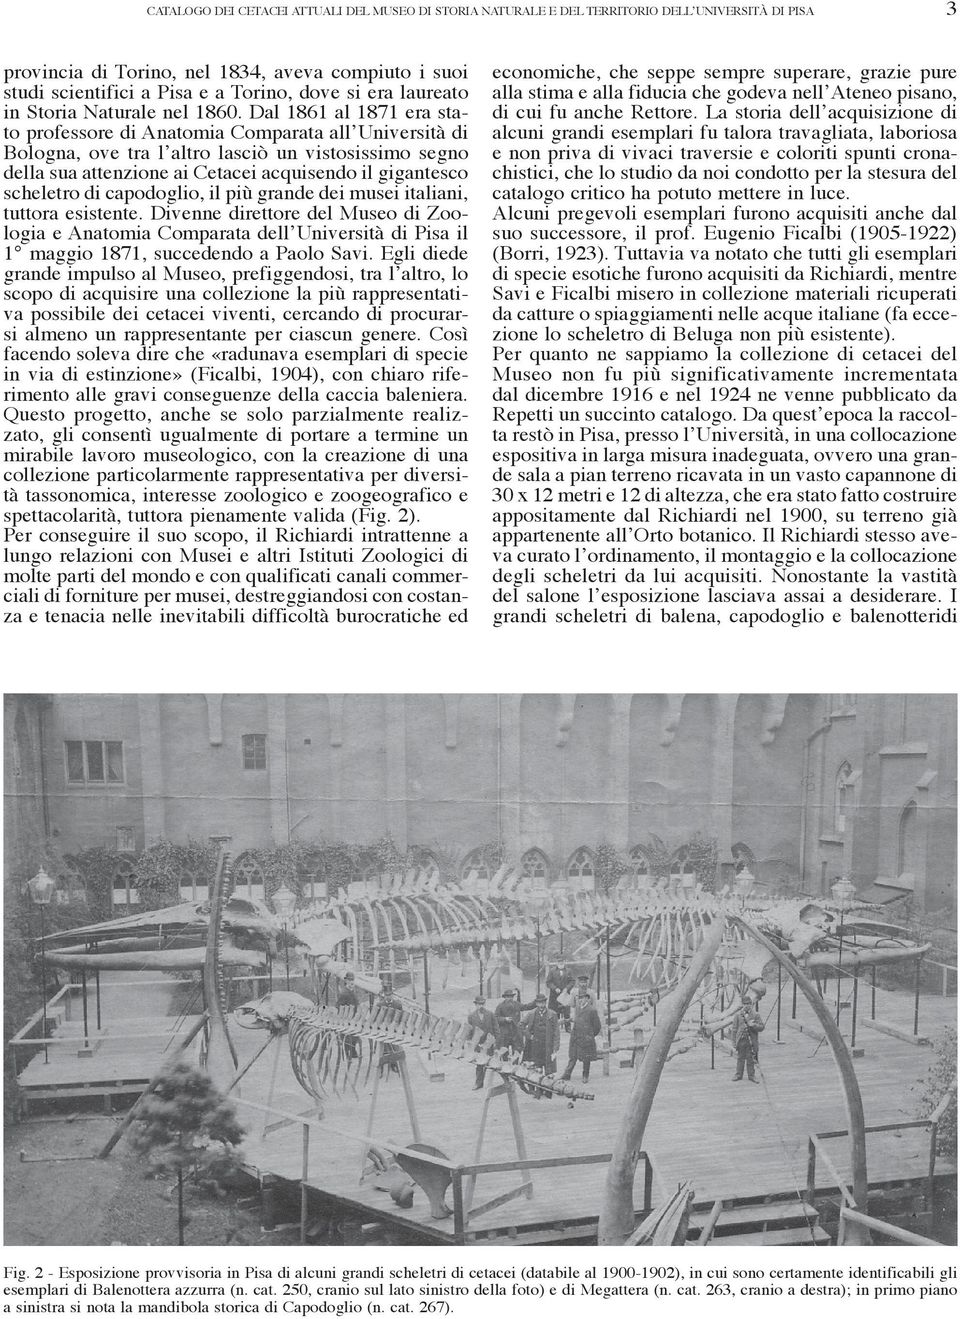 Dal 1861 al 1871 era stato professore di Anatomia Comparata all Università di Bologna, ove tra l altro lasciò un vistosissimo segno della sua attenzione ai Cetacei acquisendo il gigantesco scheletro